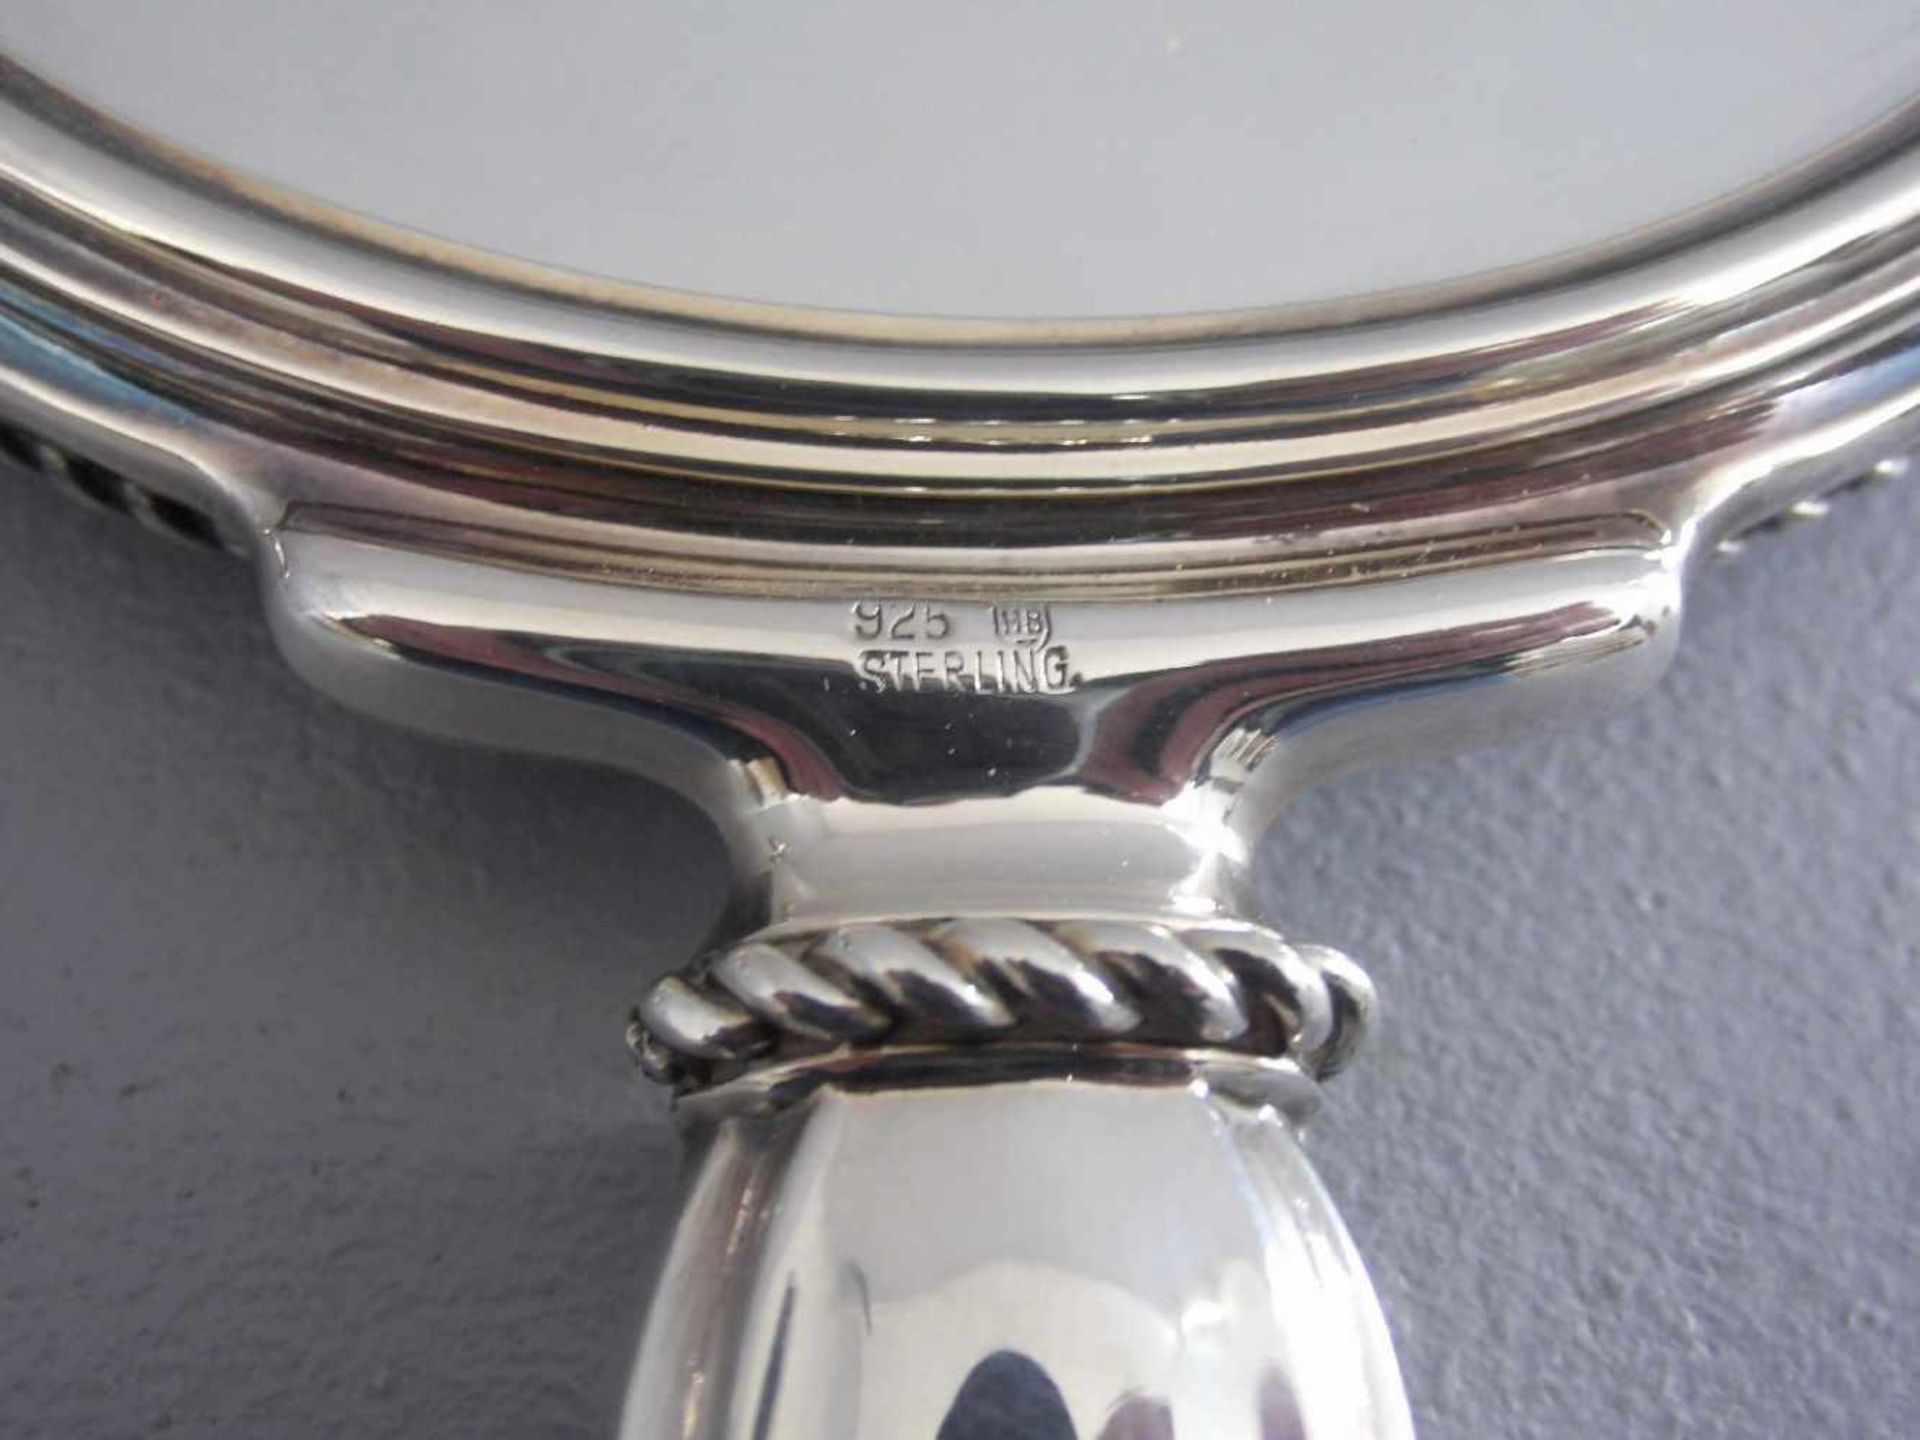 TOILETTENSET / FRISIERSET, 925er Silber, gepunzt mit Feingehaltsangabe und Herstellermarke: - Bild 3 aus 3